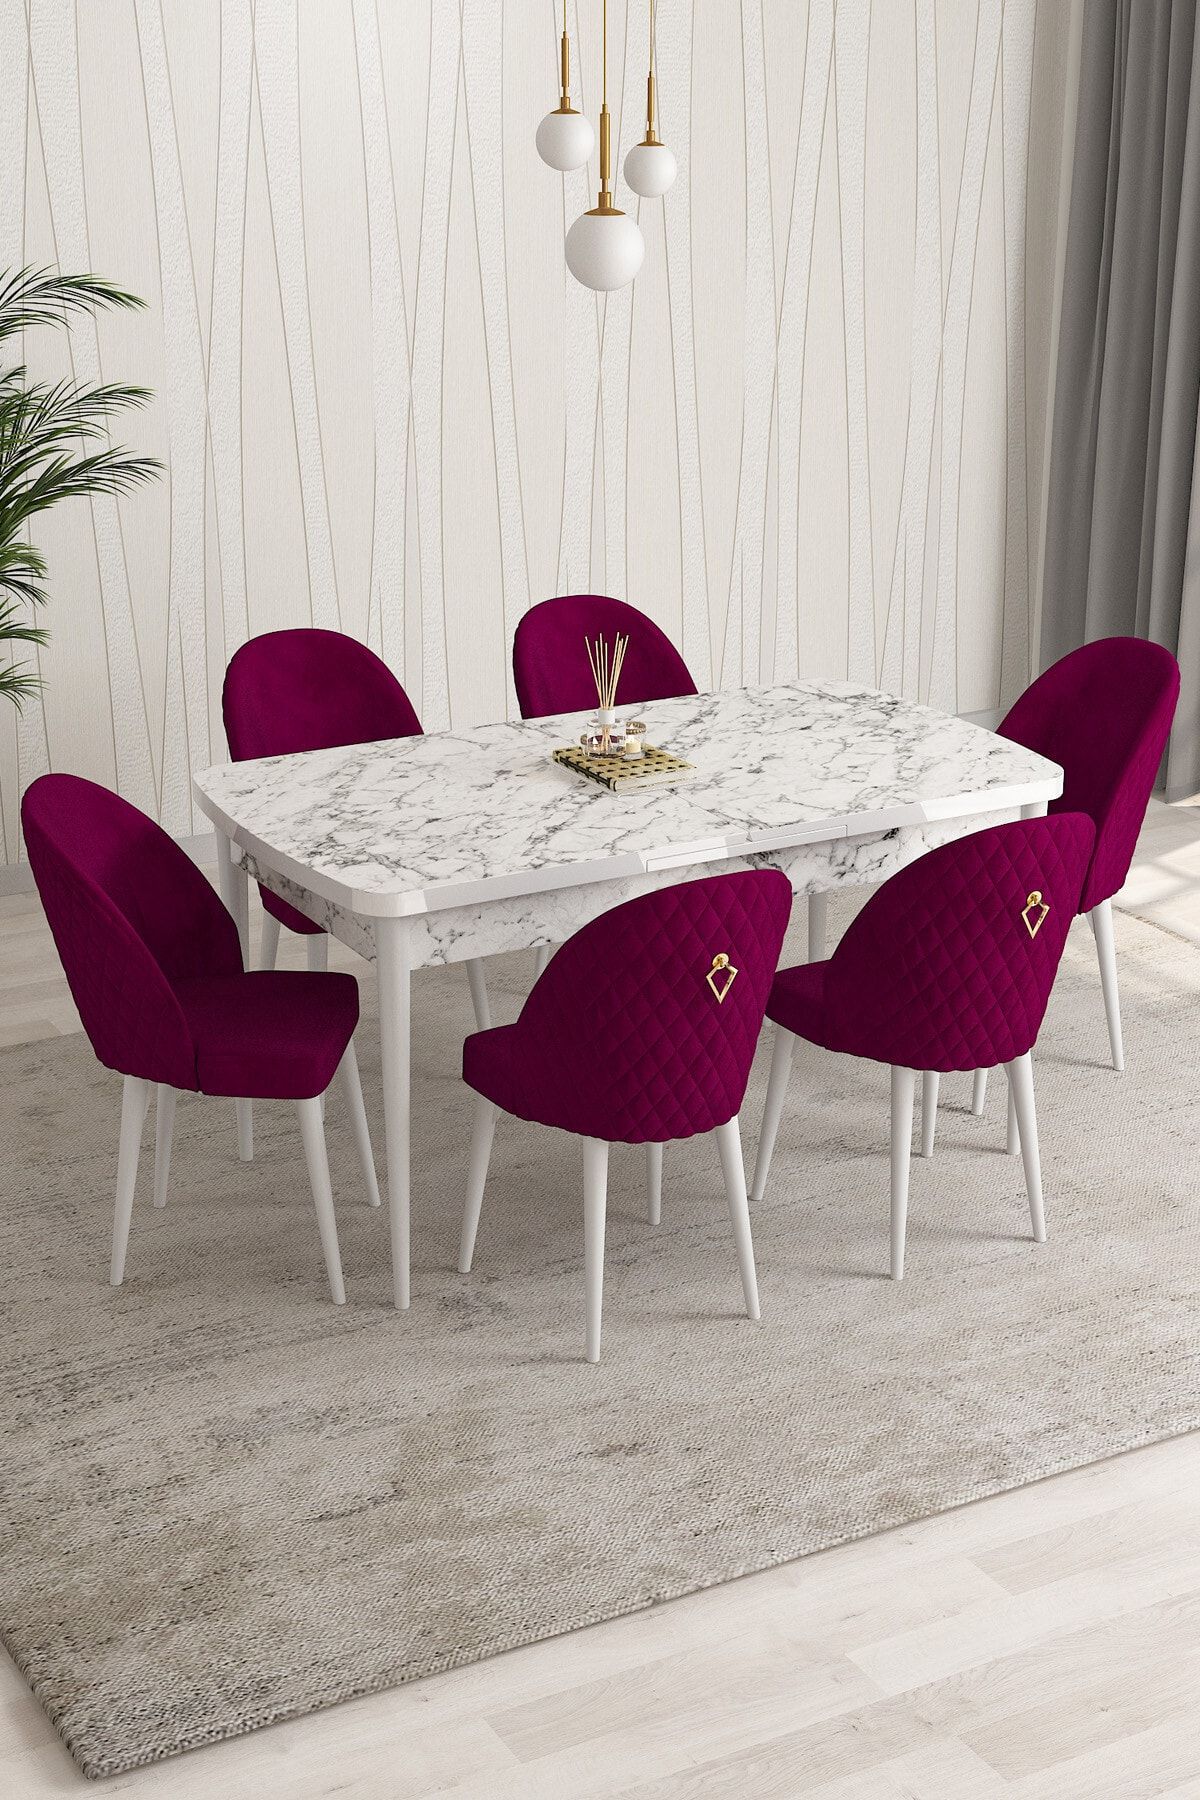 Rovena Modica Beyaz Mermer Desen 80x132 Açılabilir Yemek Masası Takımı 6 Adet Sandalye